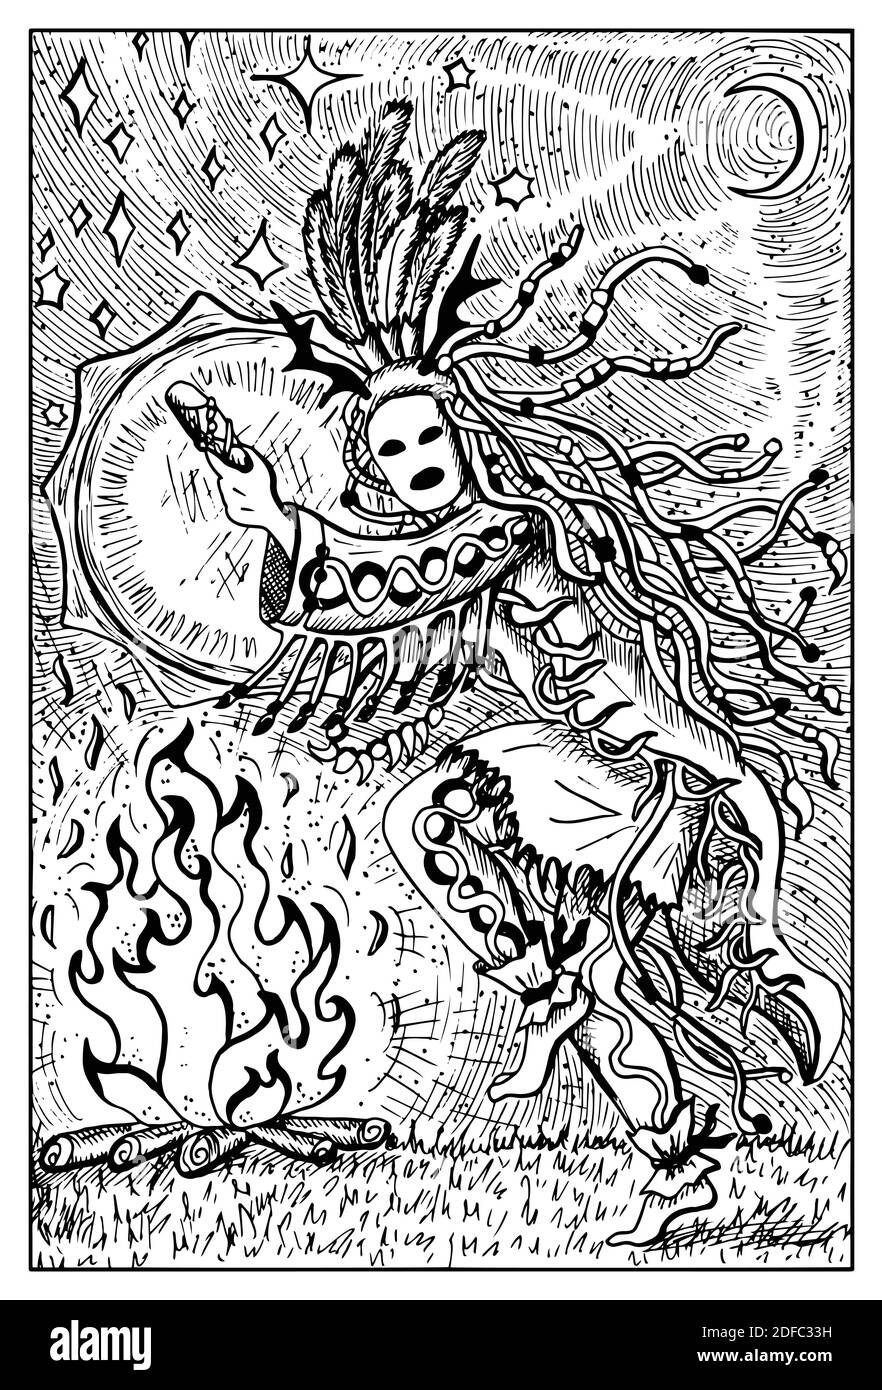 Shaman, incisa in bianco e nero Fantasy illustrazione con creature mitologiche e personaggi Illustrazione Vettoriale